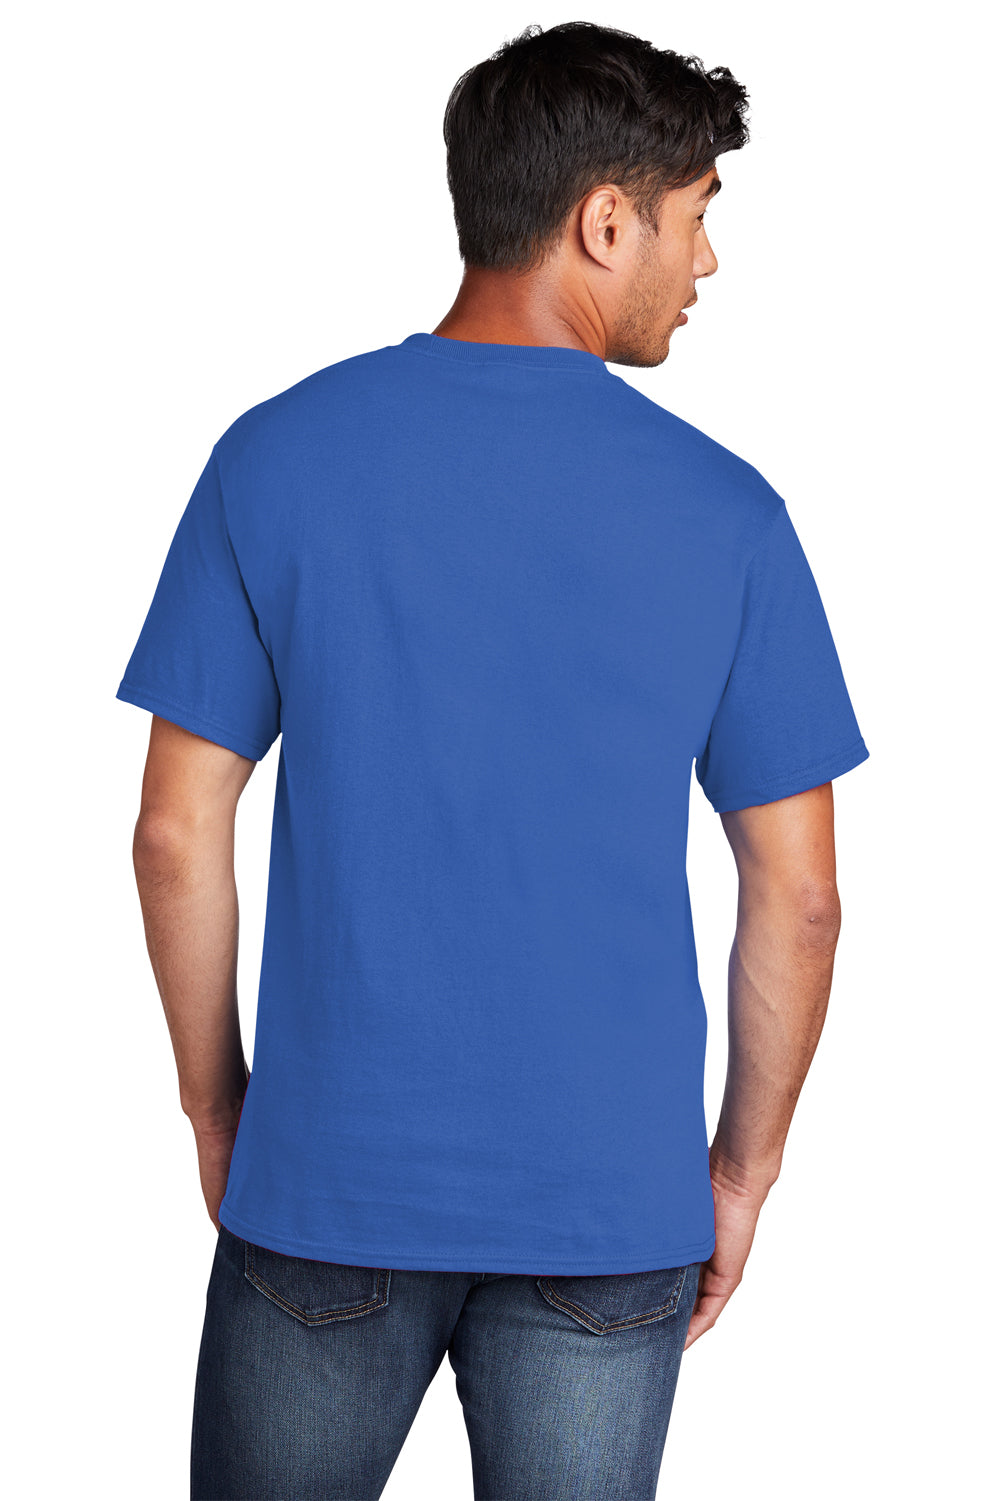 Port & Company PC54DTG Core Cotton DTG Short Sleeve Crewneck T-Shirt Royal Blue Back